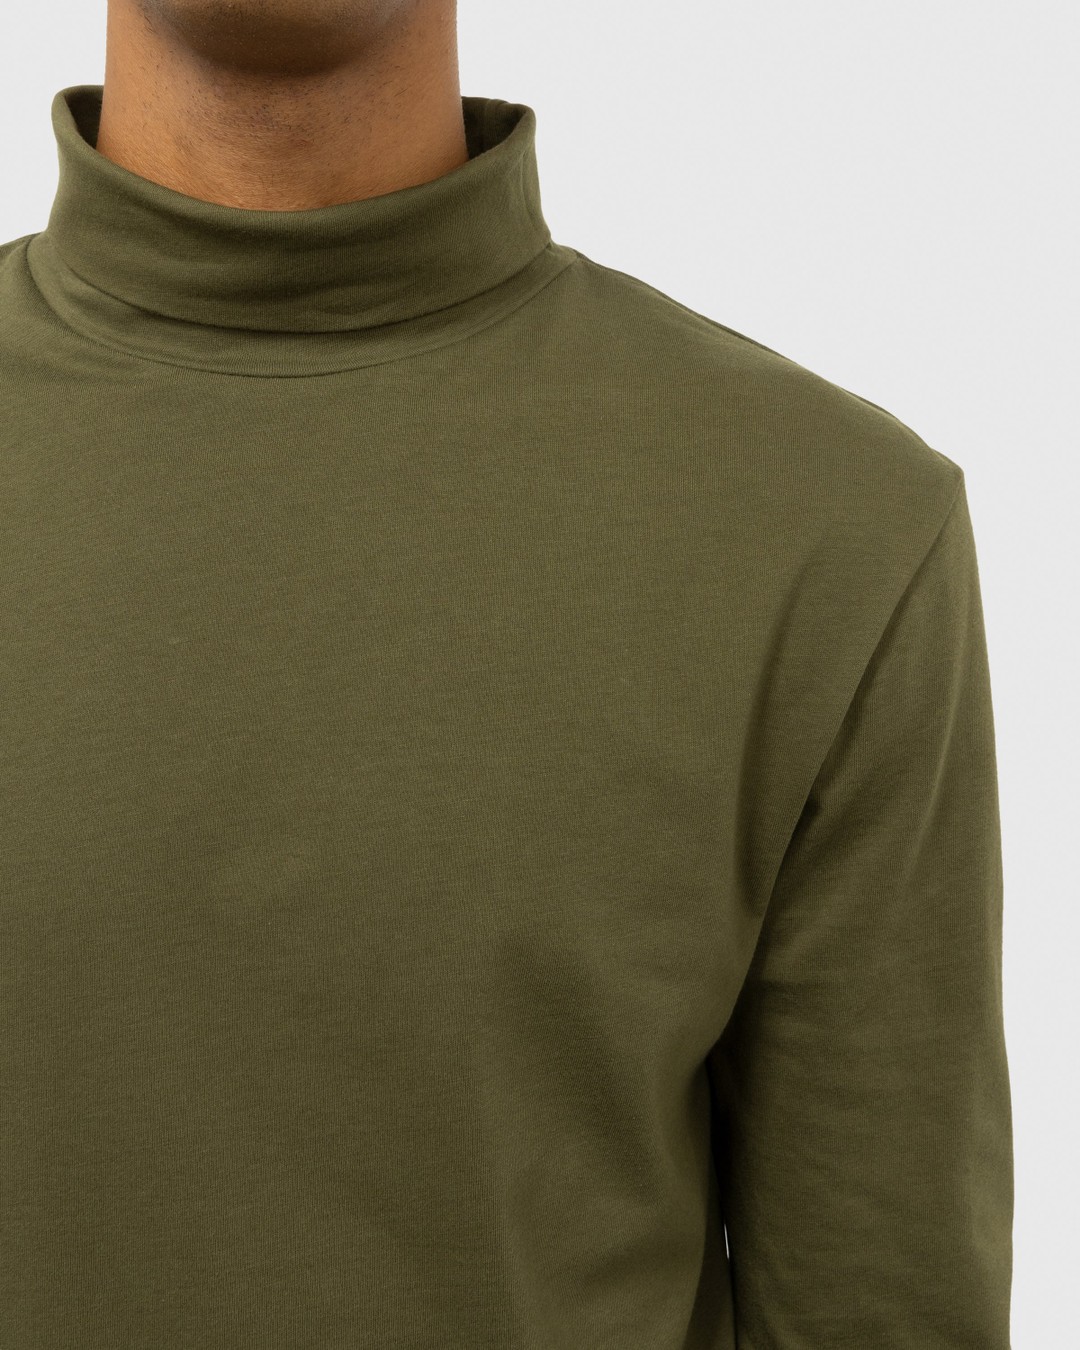 Dries van Noten – Heyzo Turtleneck Jersey Shirt Green - Sweats - Green - Image 5